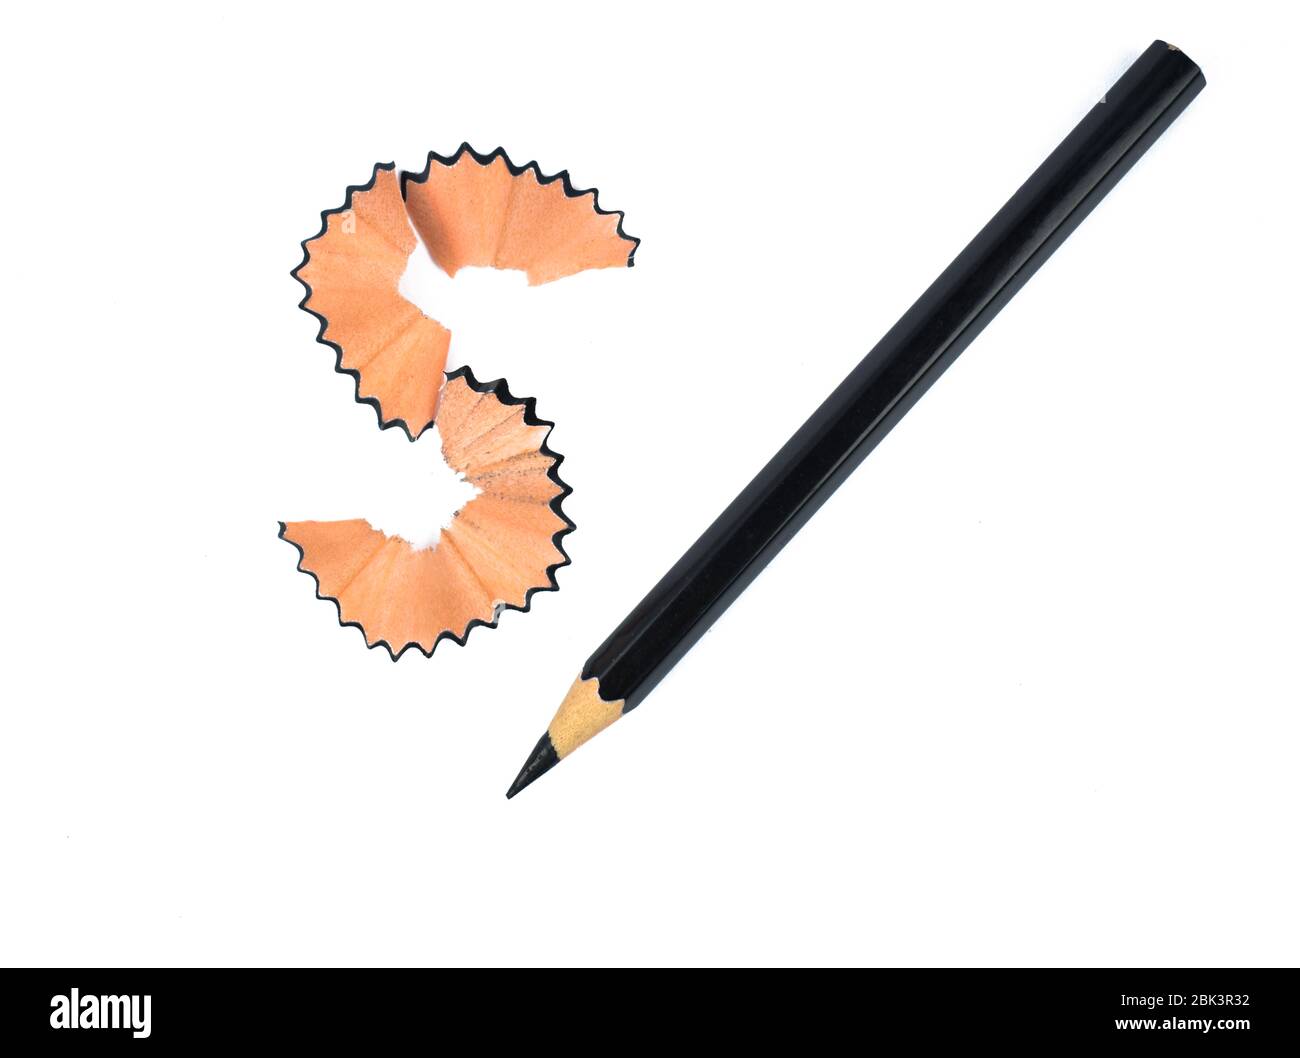 Schwarze Farbe Holz Bleistift Buntstift neben einem s förmigen Holz Bleistift Späne platziert Stockfoto